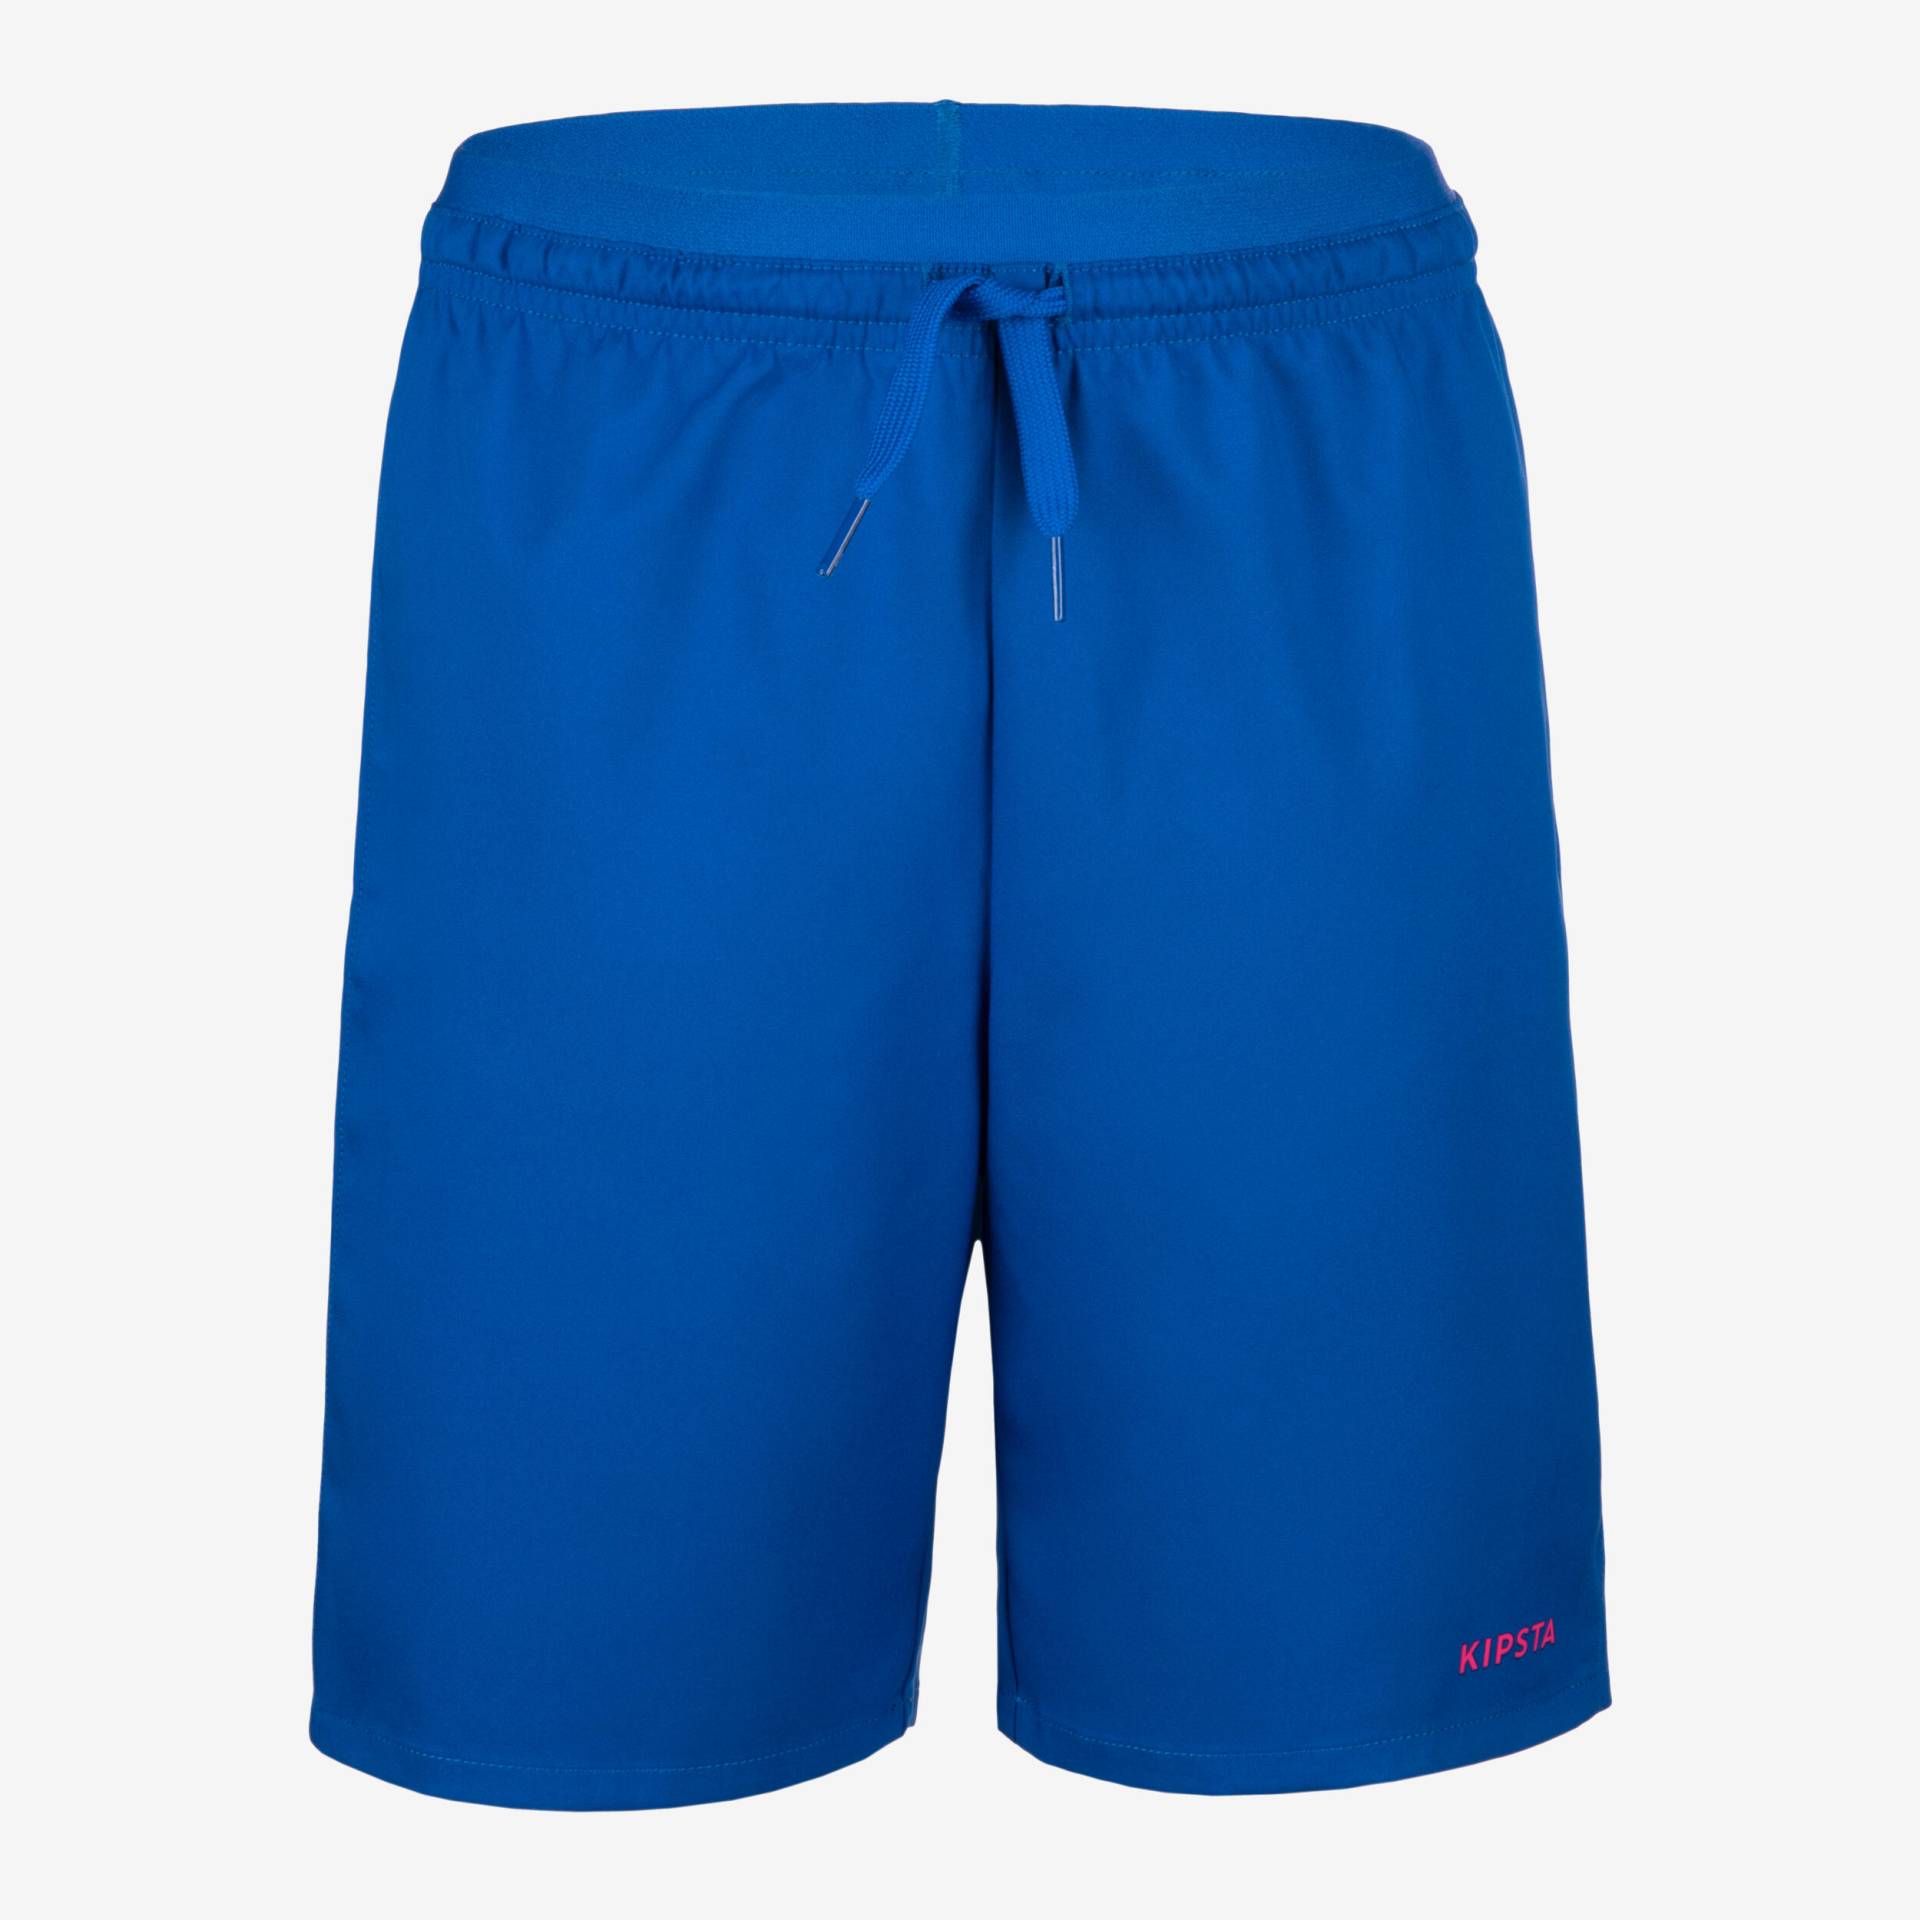 Kinder Fussball Shorts - VIRALTO Aqua blau/rosa von KIPSTA